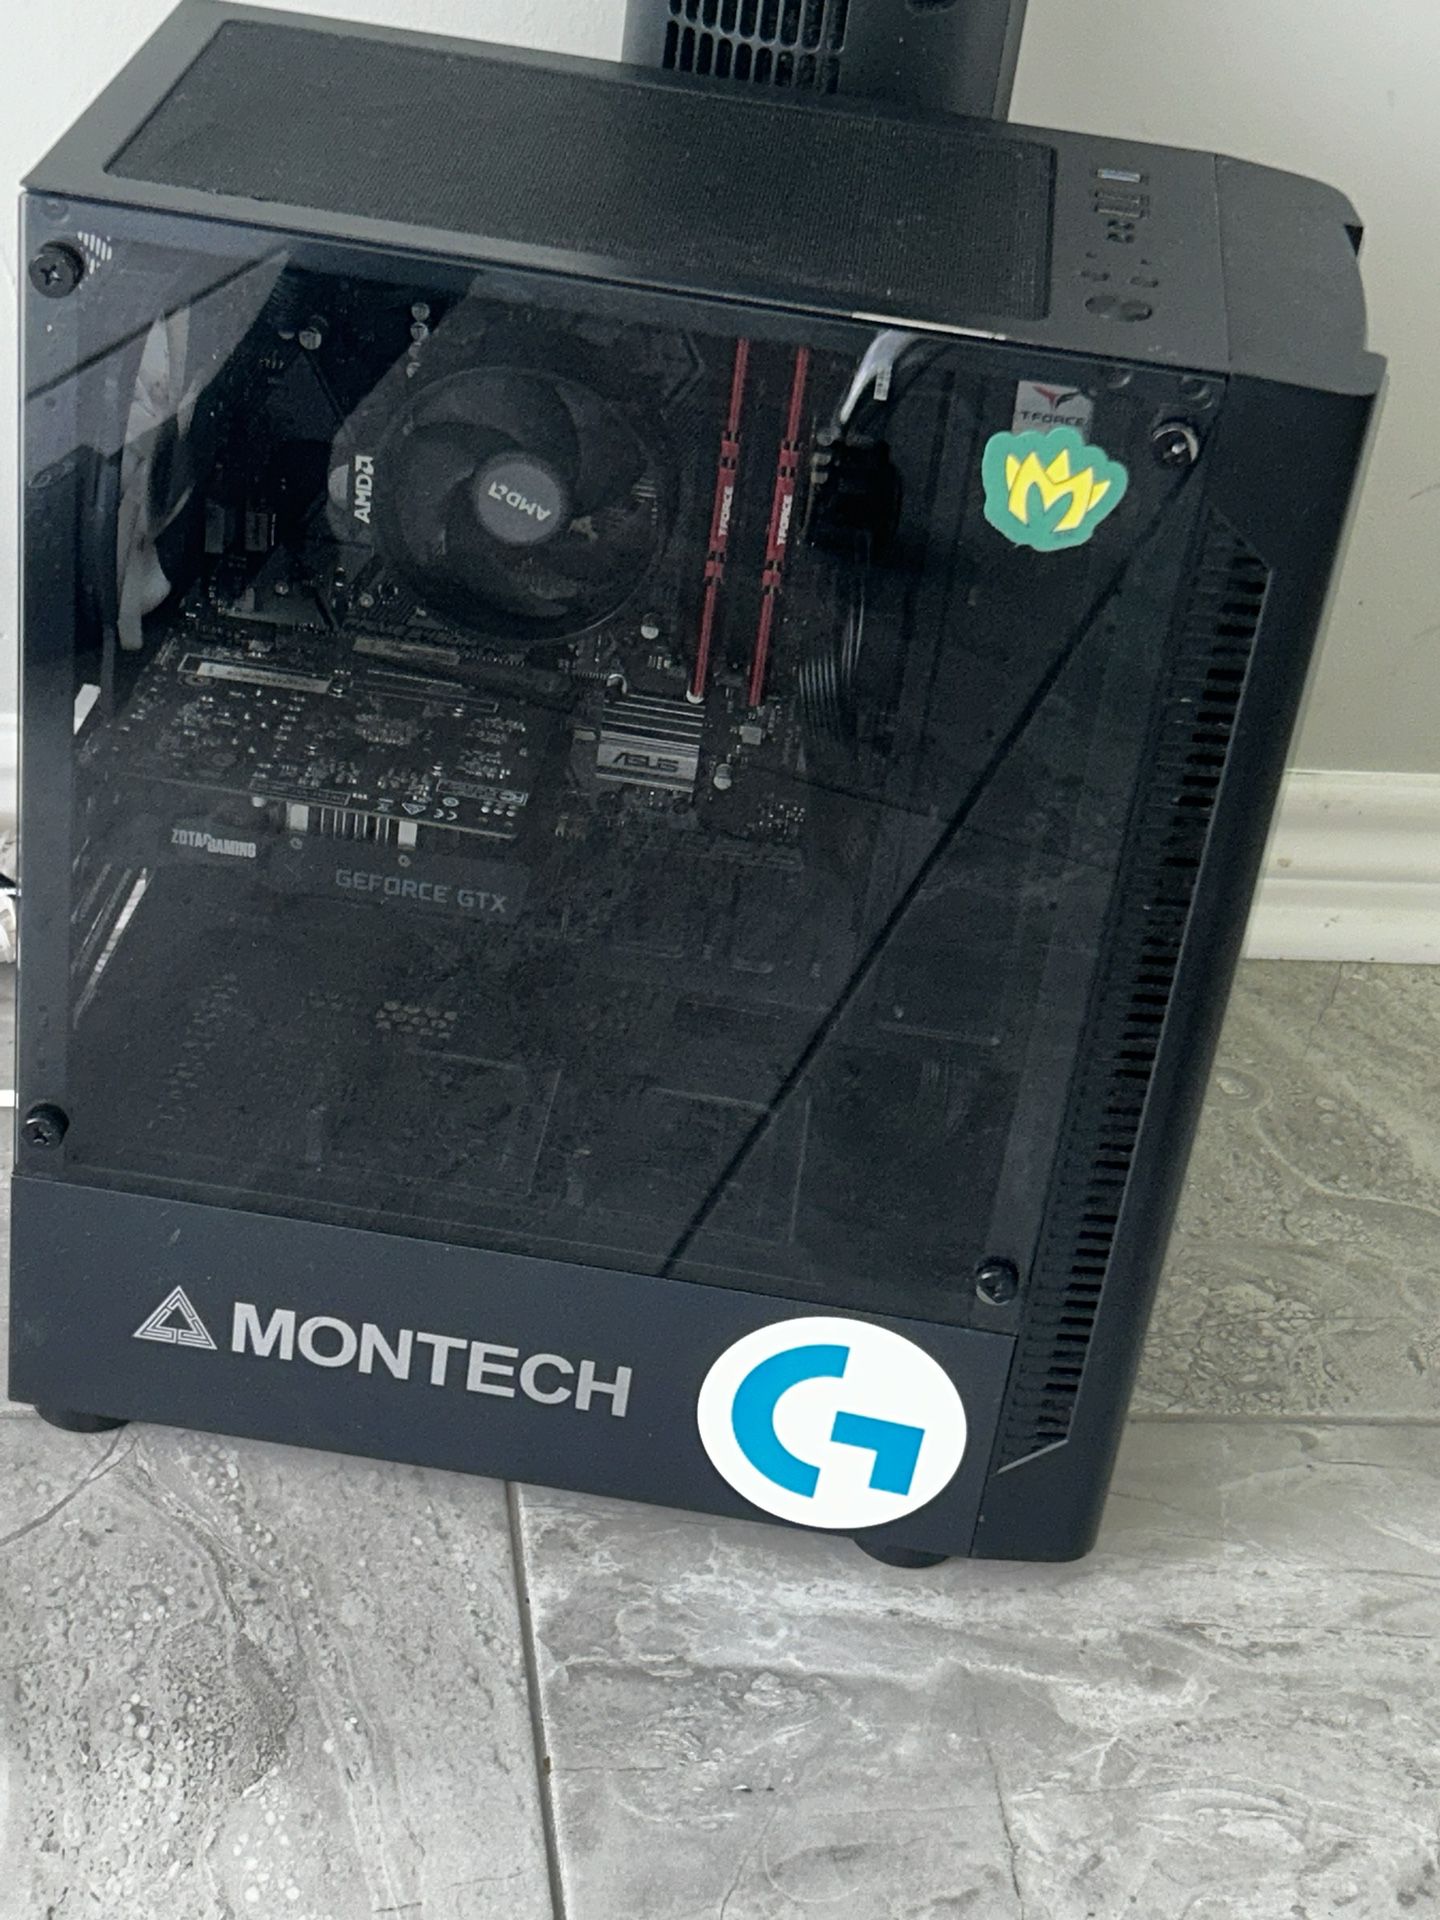 Black Montech ASUS PC